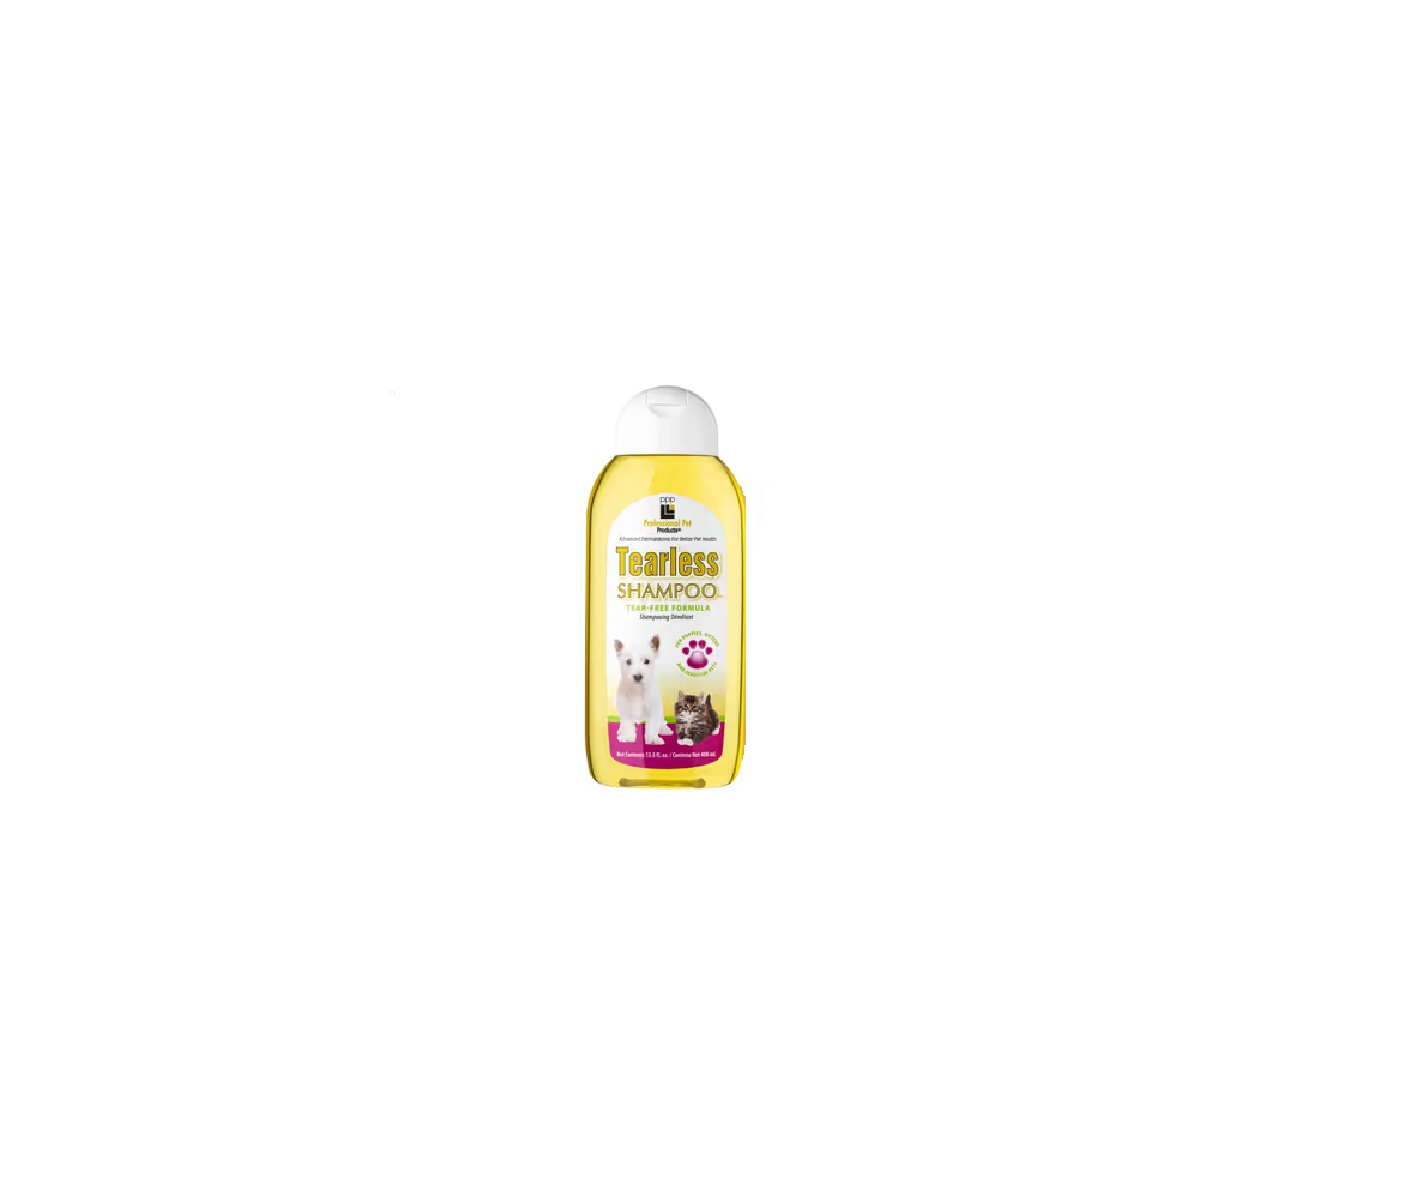 Professional Pet Products, Tearless Shampoo - delikatny szampon dla szczeniąt i kociąt, Szampon dla psa